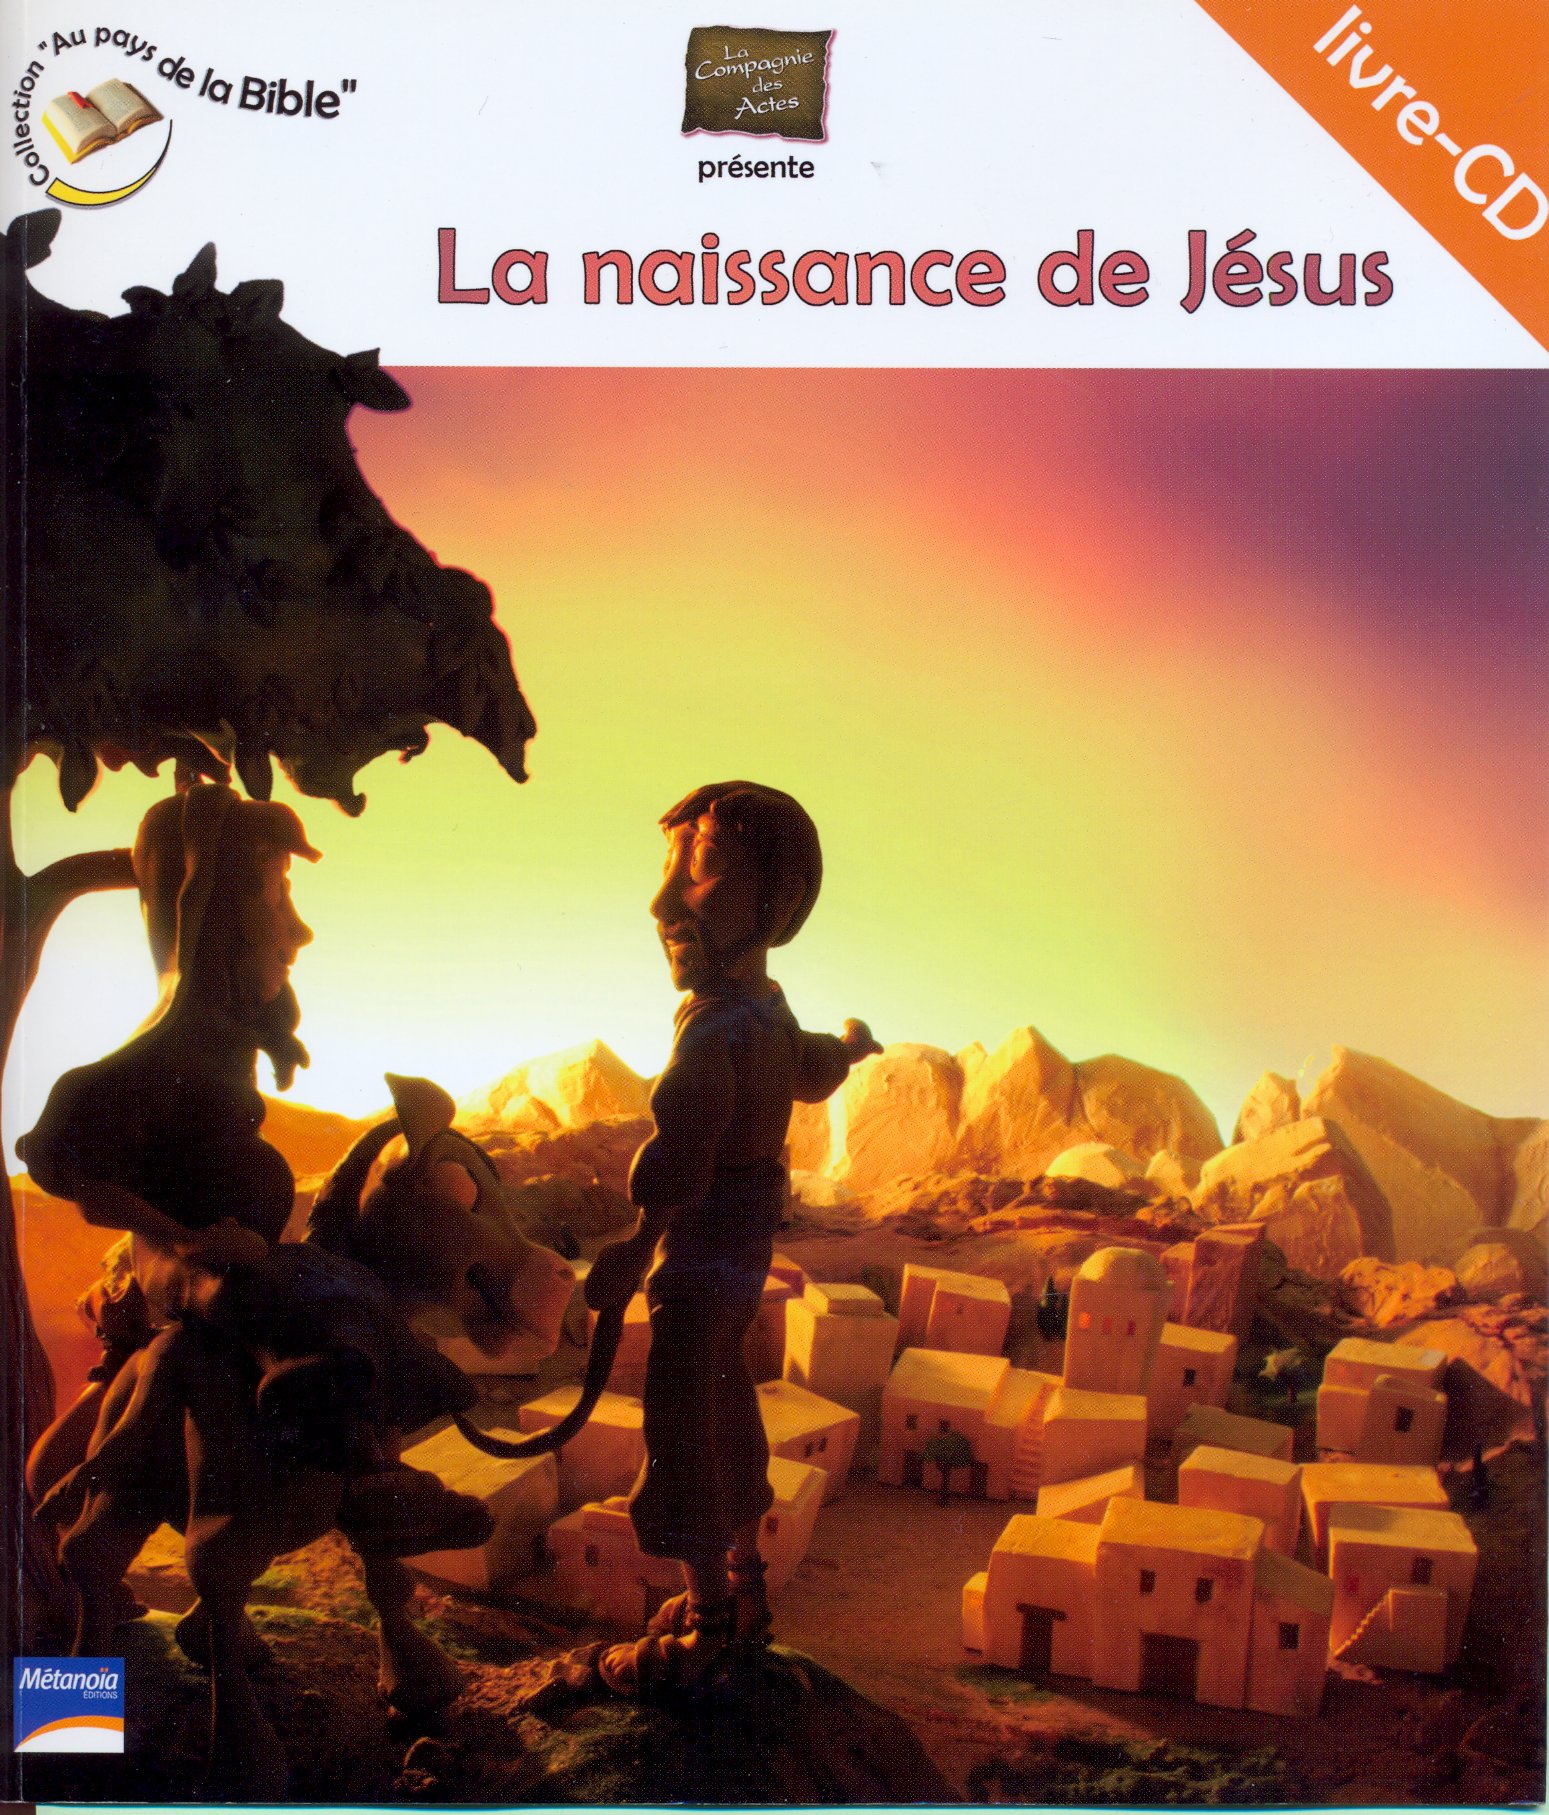 Naissance de Jésus (La) - livre-(cd) - Collection au pays de la Bible